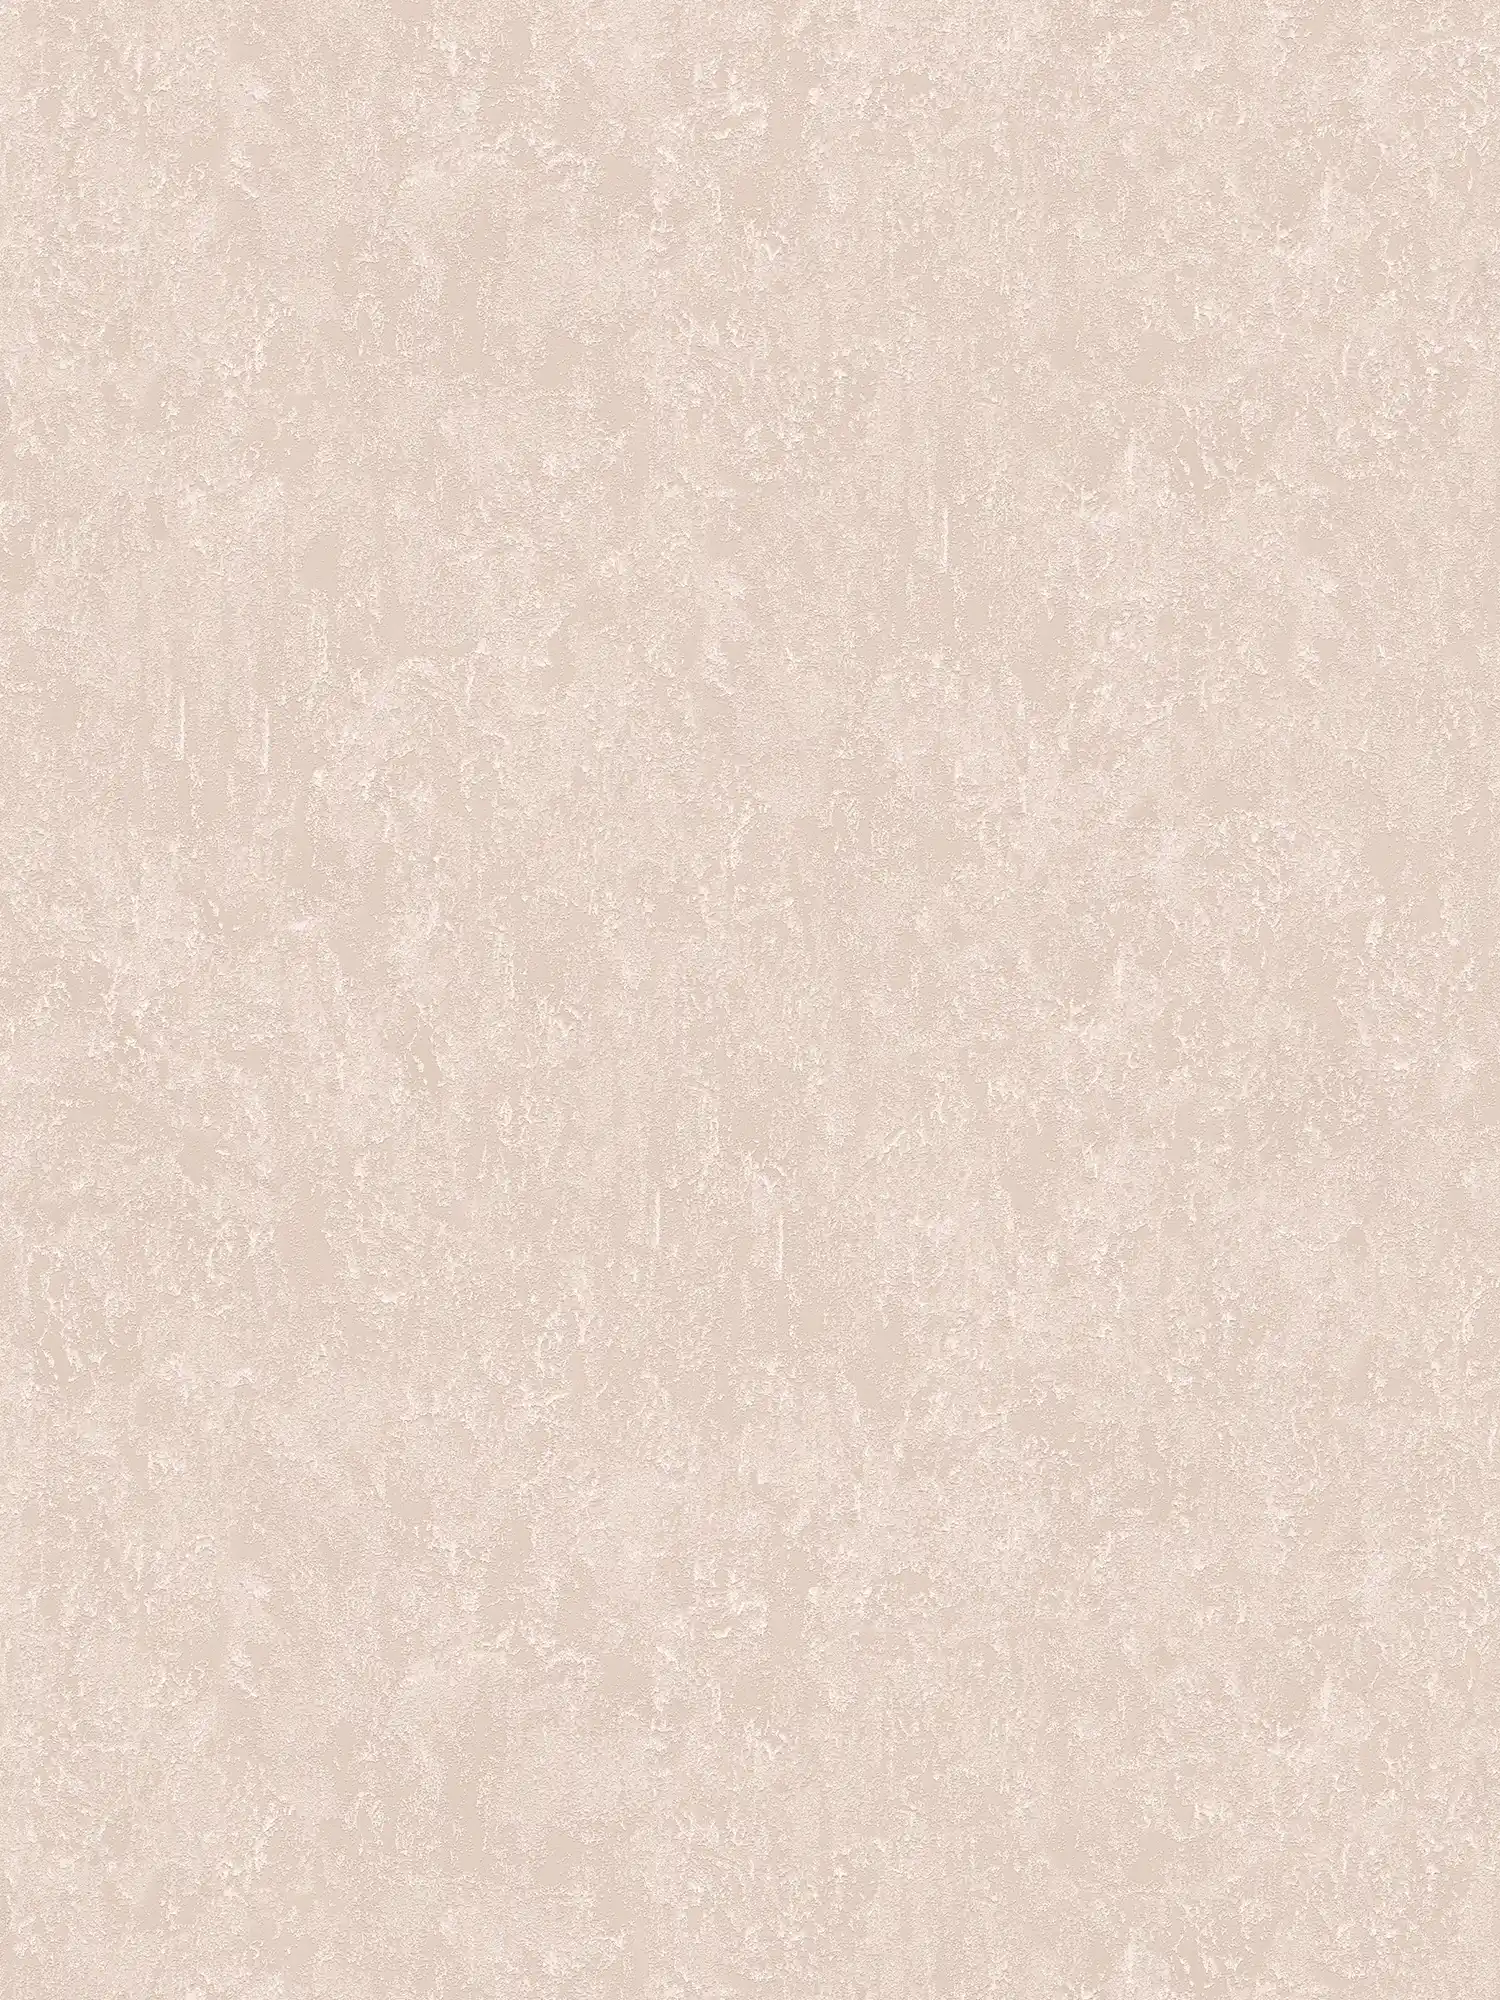 Carta da parati metallizzata marrone chiaro lucida con struttura in rilievo
